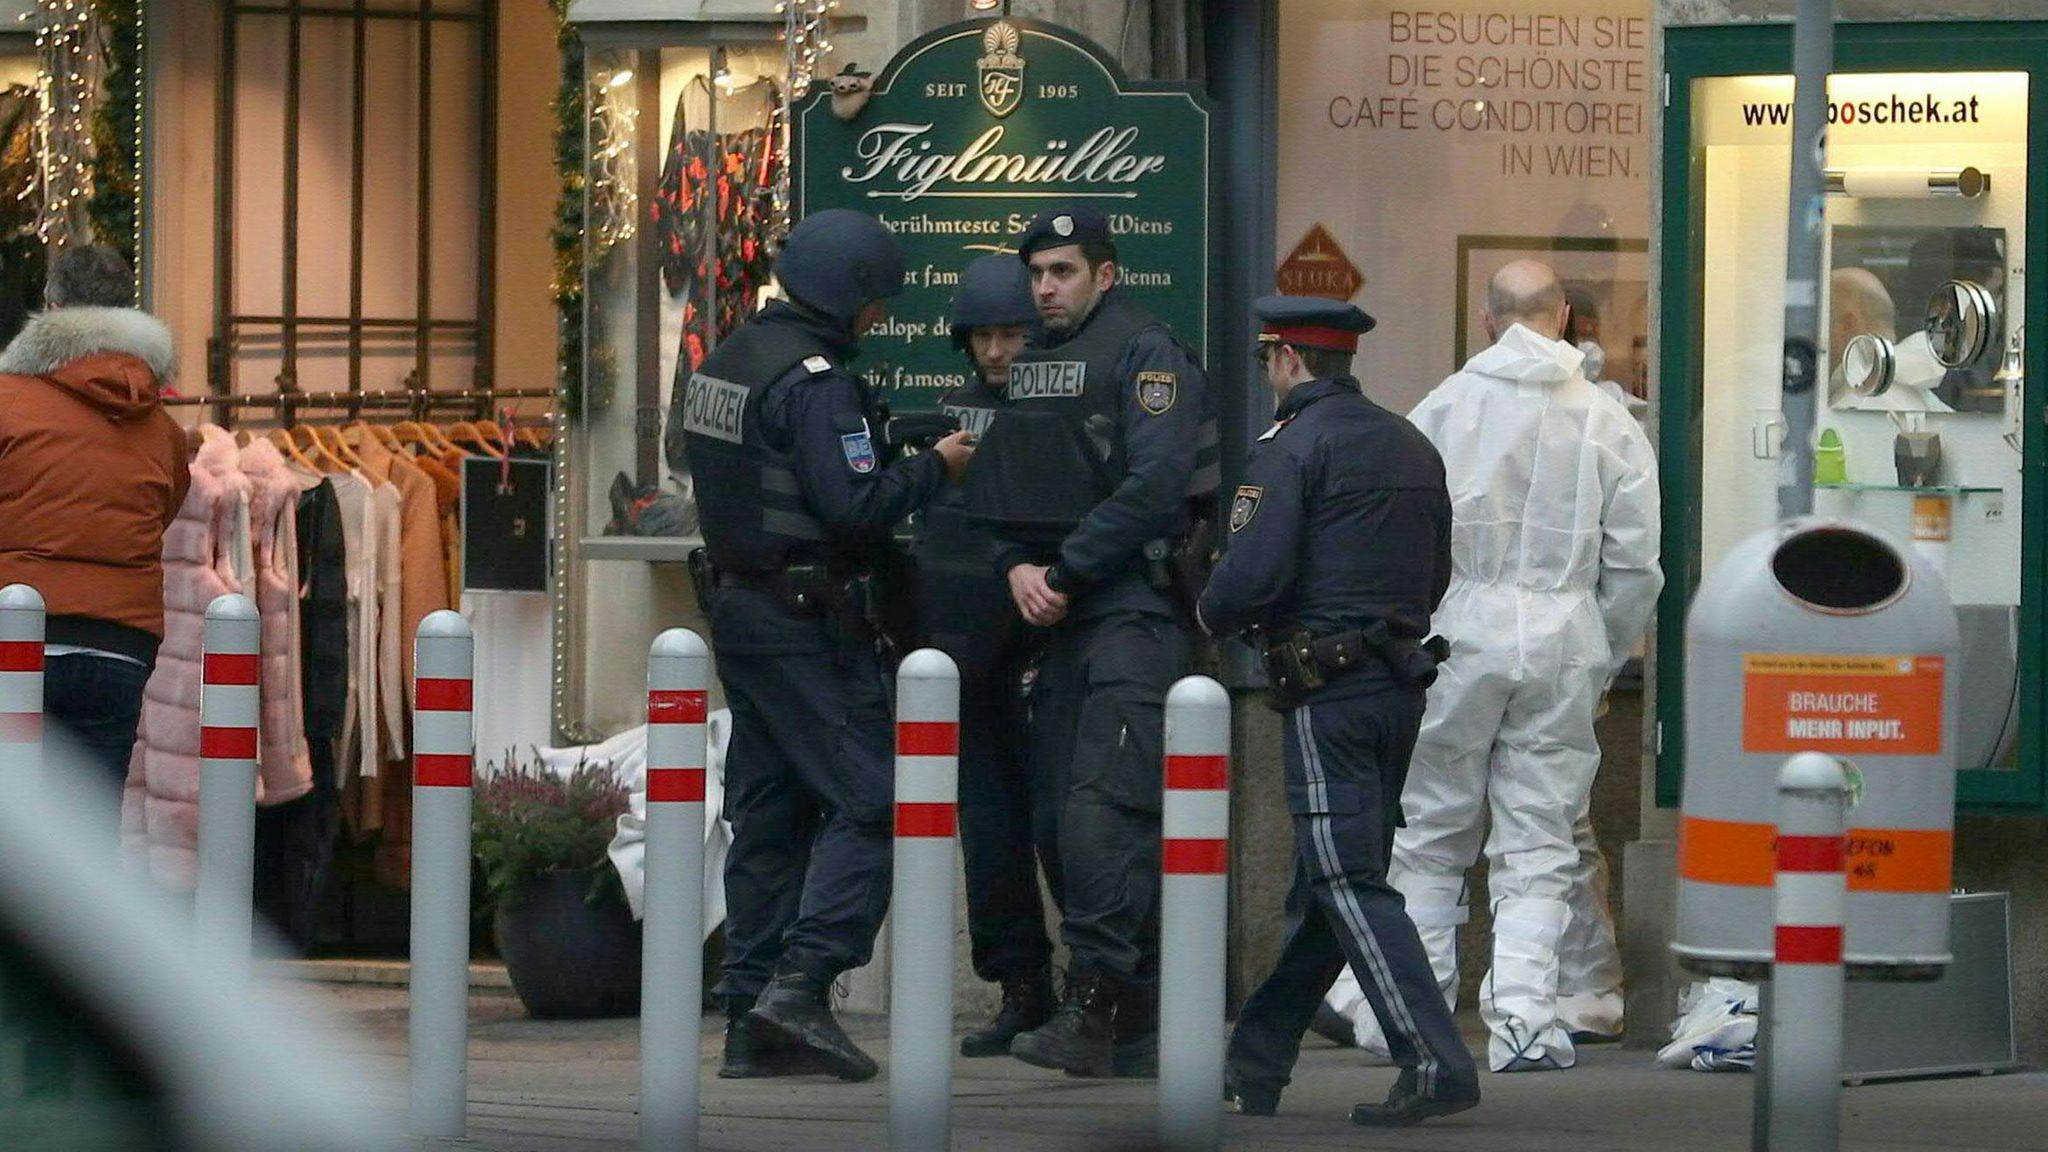 News: Nach Schüssen in Wien: Polizei bittet Bevölkerung um Mithilfe